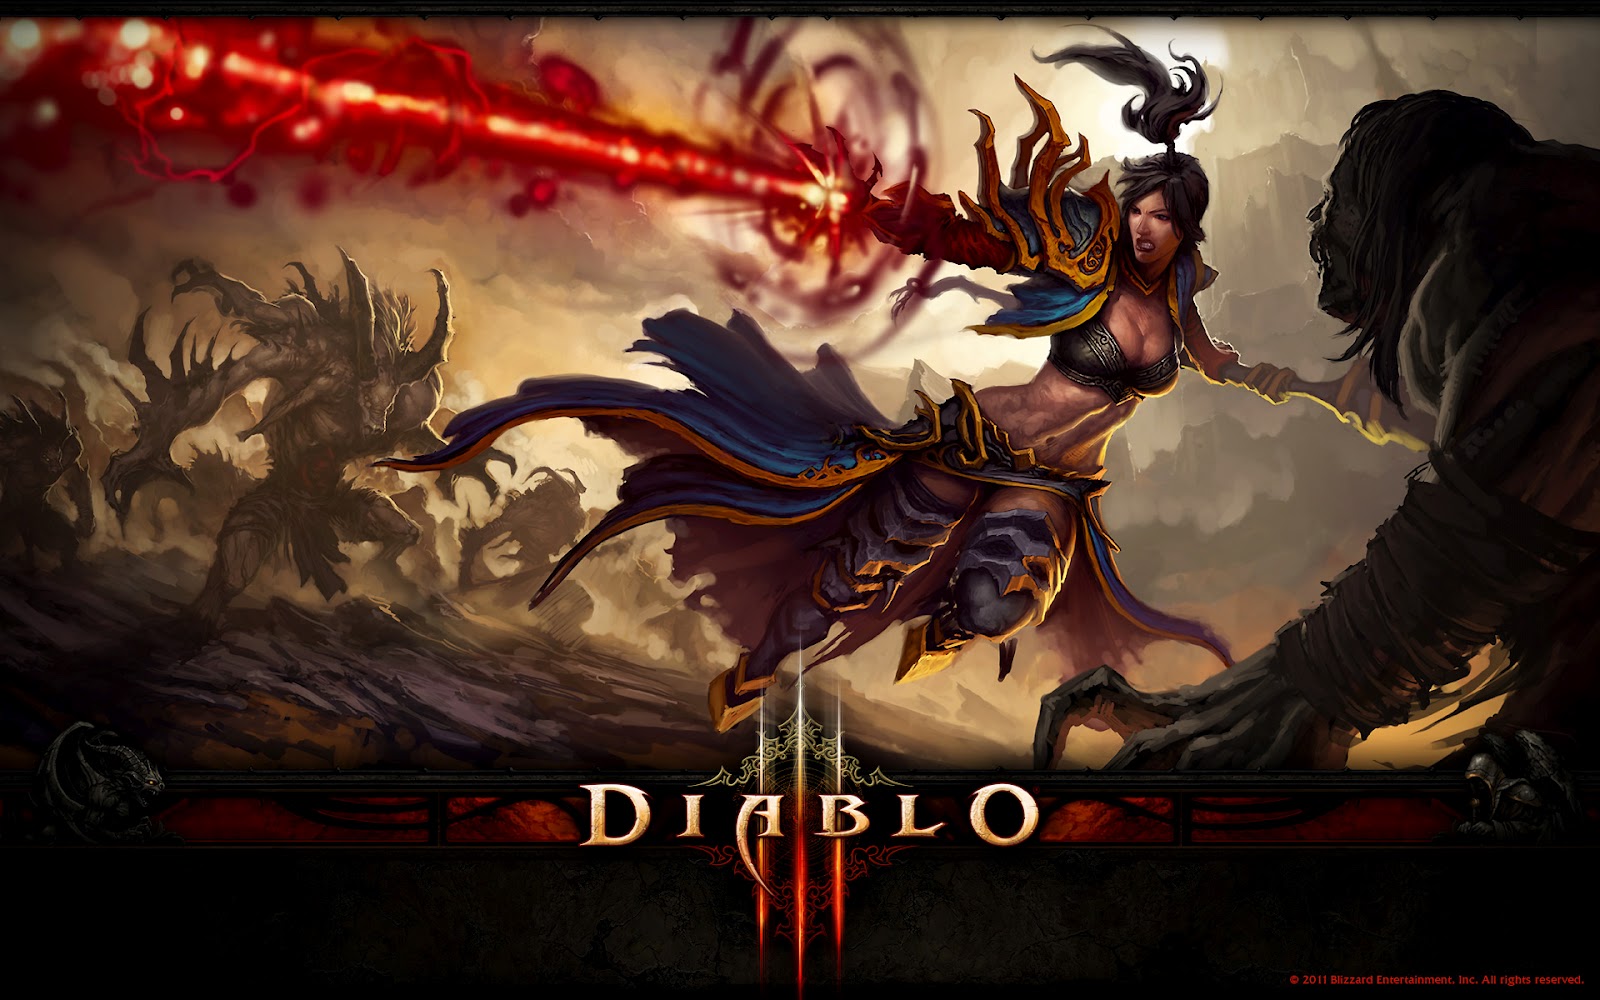 fondo de pantalla del personaje del juego,juego de acción y aventura,cg artwork,juegos,personaje de ficción,mitología